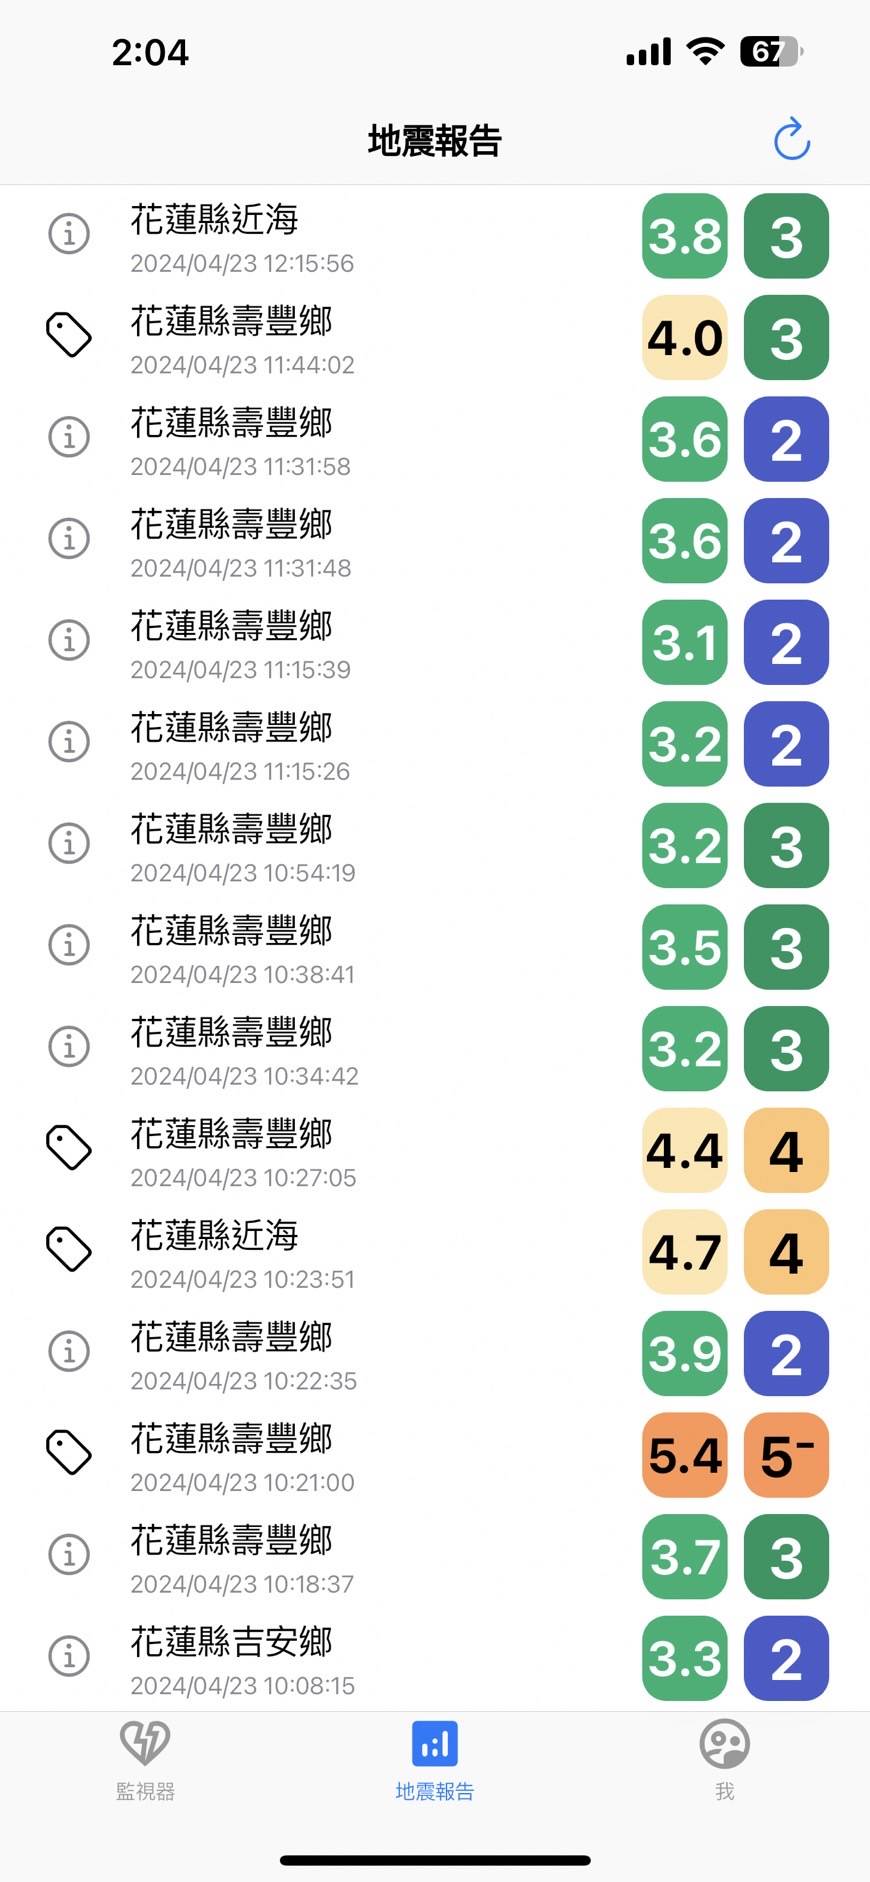 從昨（22）日晚間到今（23）日早上，花蓮地區發生多起地震驚動不少台灣人，想要提早預知地震風險，《網路溫度計DailyView》整理4款地震預警App供大家下載，無論是iOS或Android用戶都能使用，其中「KNY台灣天氣.地震速報」與僅由17歲高中生一人打造的「台灣地震速報」加入倒數功能，更獲得不少使用者好評肯定。